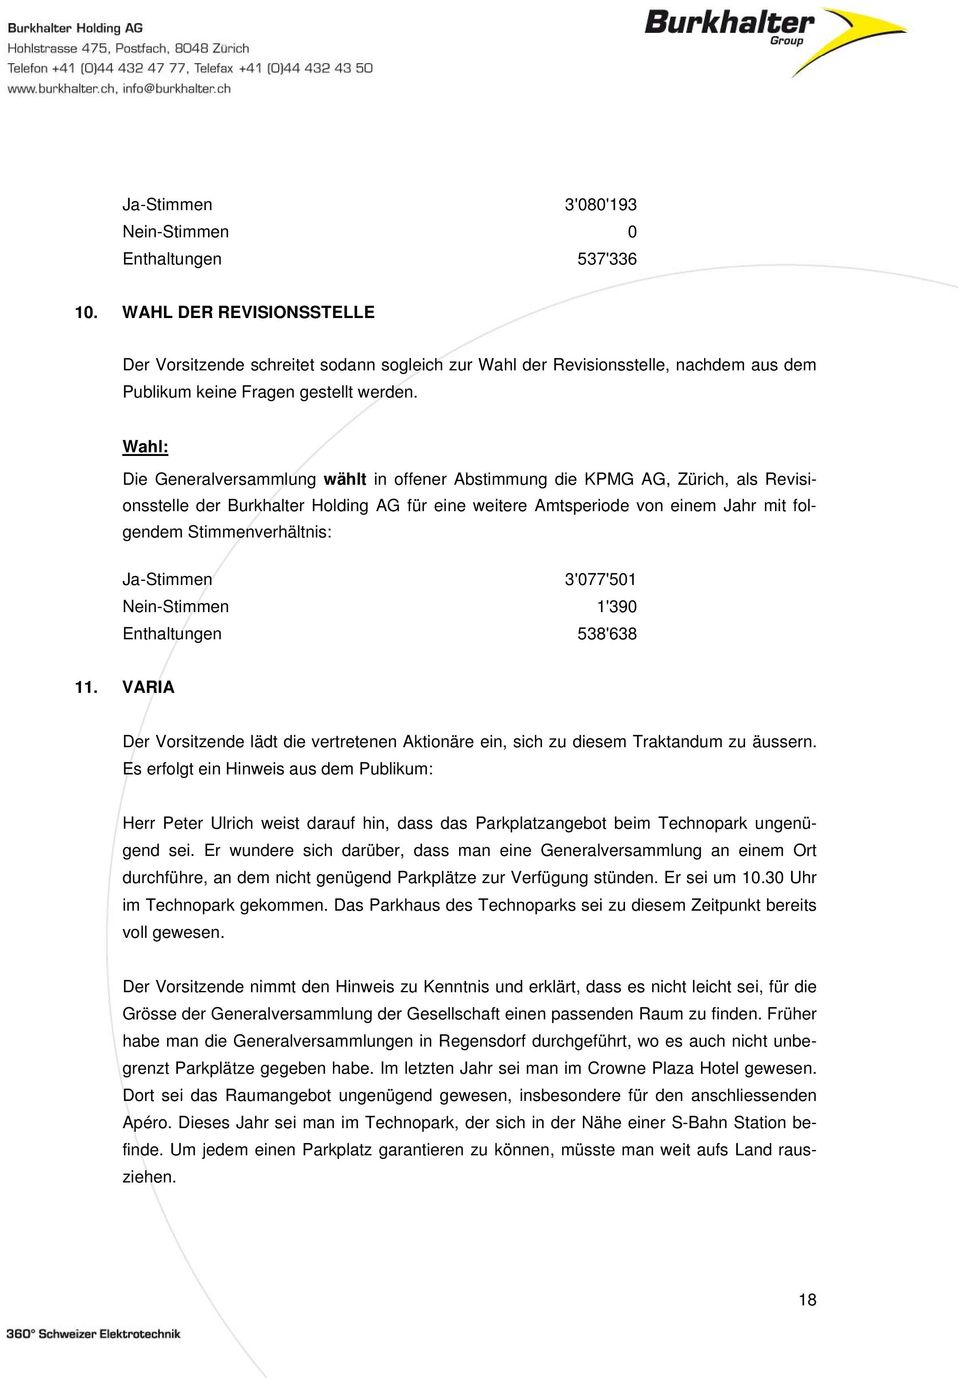 Wahl: Die Generalversammlung wählt in offener Abstimmung die KPMG AG, Zürich, als Revisionsstelle der Burkhalter Holding AG für eine weitere Amtsperiode von einem Jahr mit folgendem